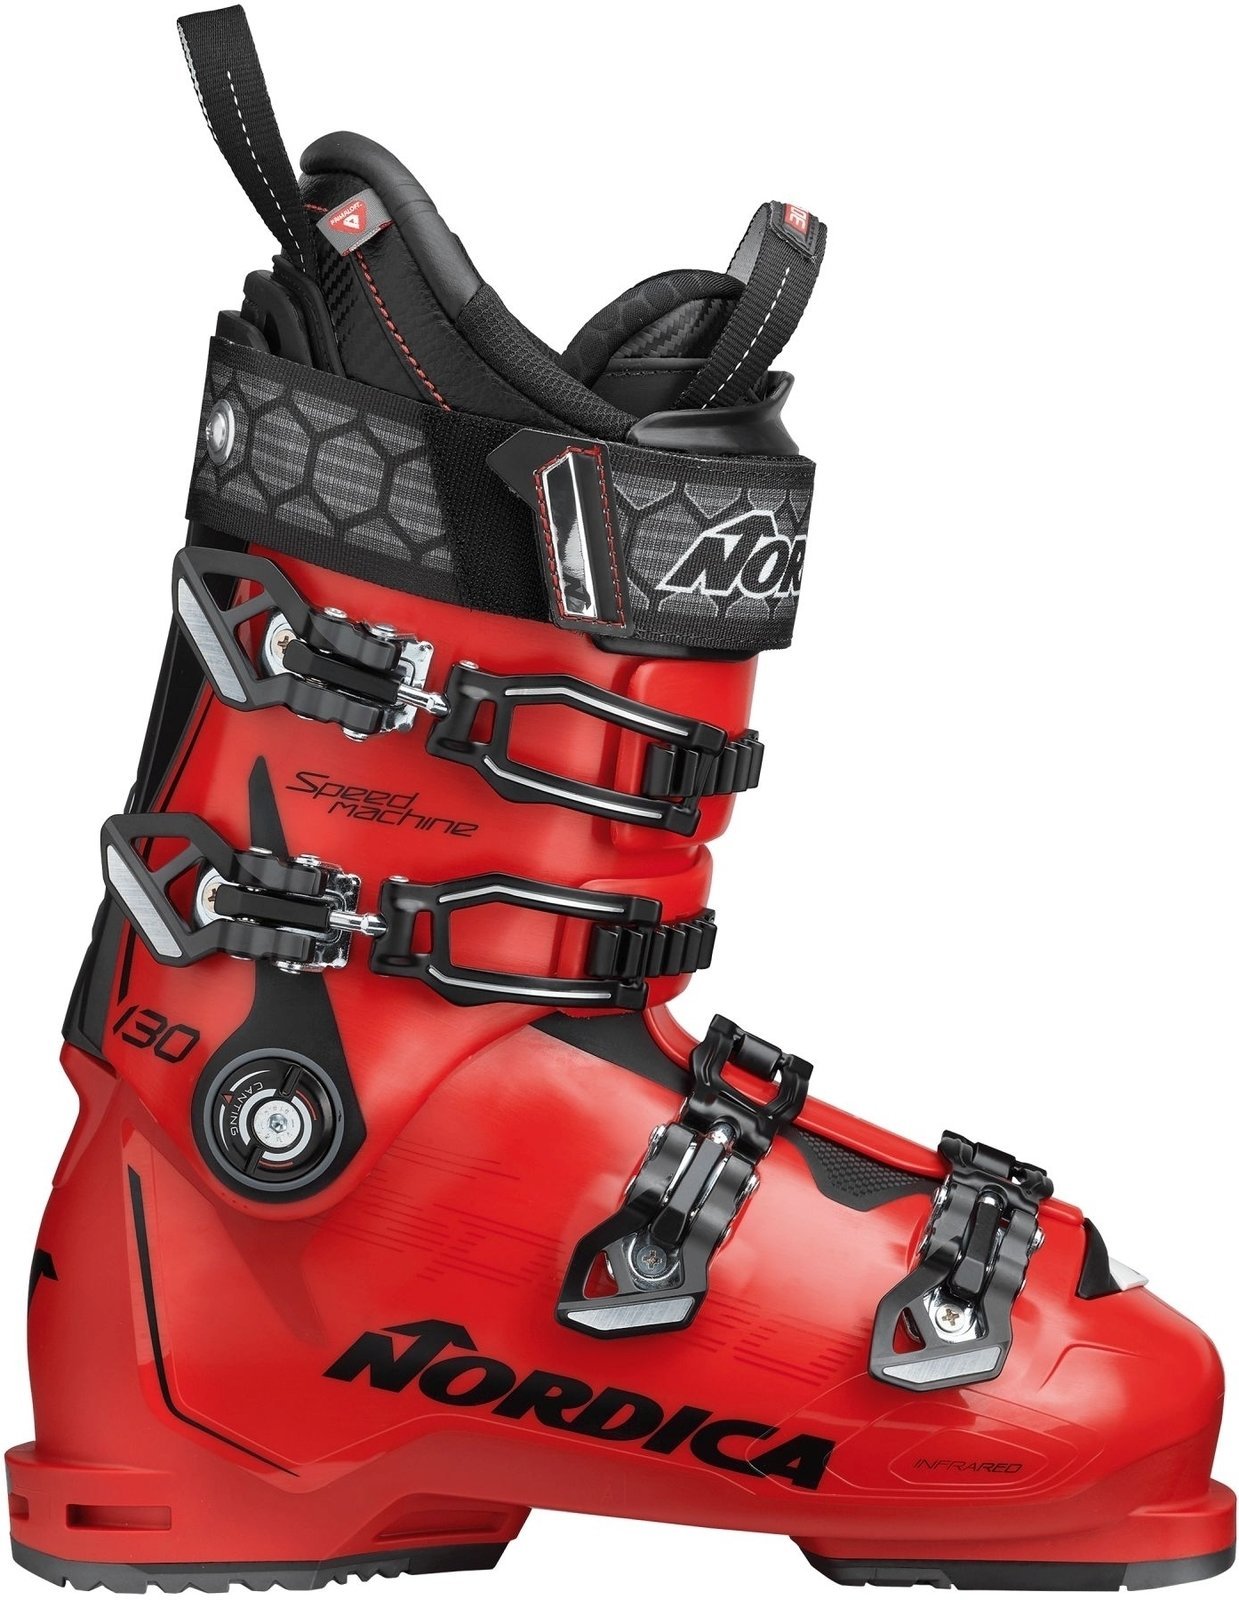 Cipele za alpsko skijanje Nordica Speedmachine Crvena-Crna 275 Cipele za alpsko skijanje